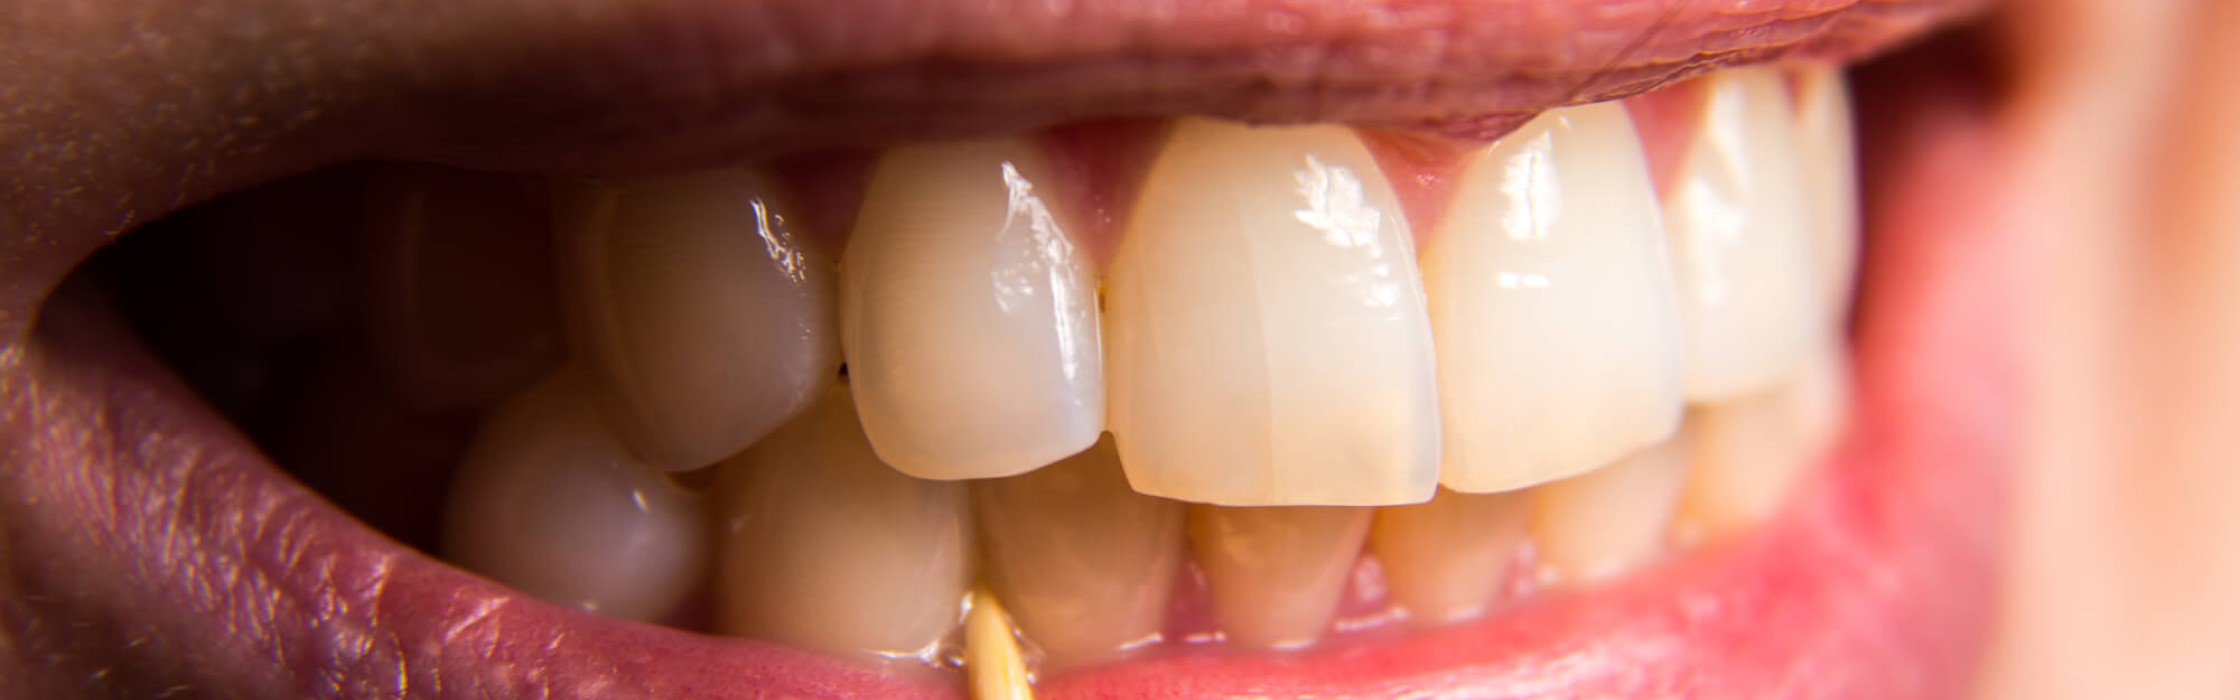 Riss im Zahn: Diese Behandlungsmöglichkeiten gibt es